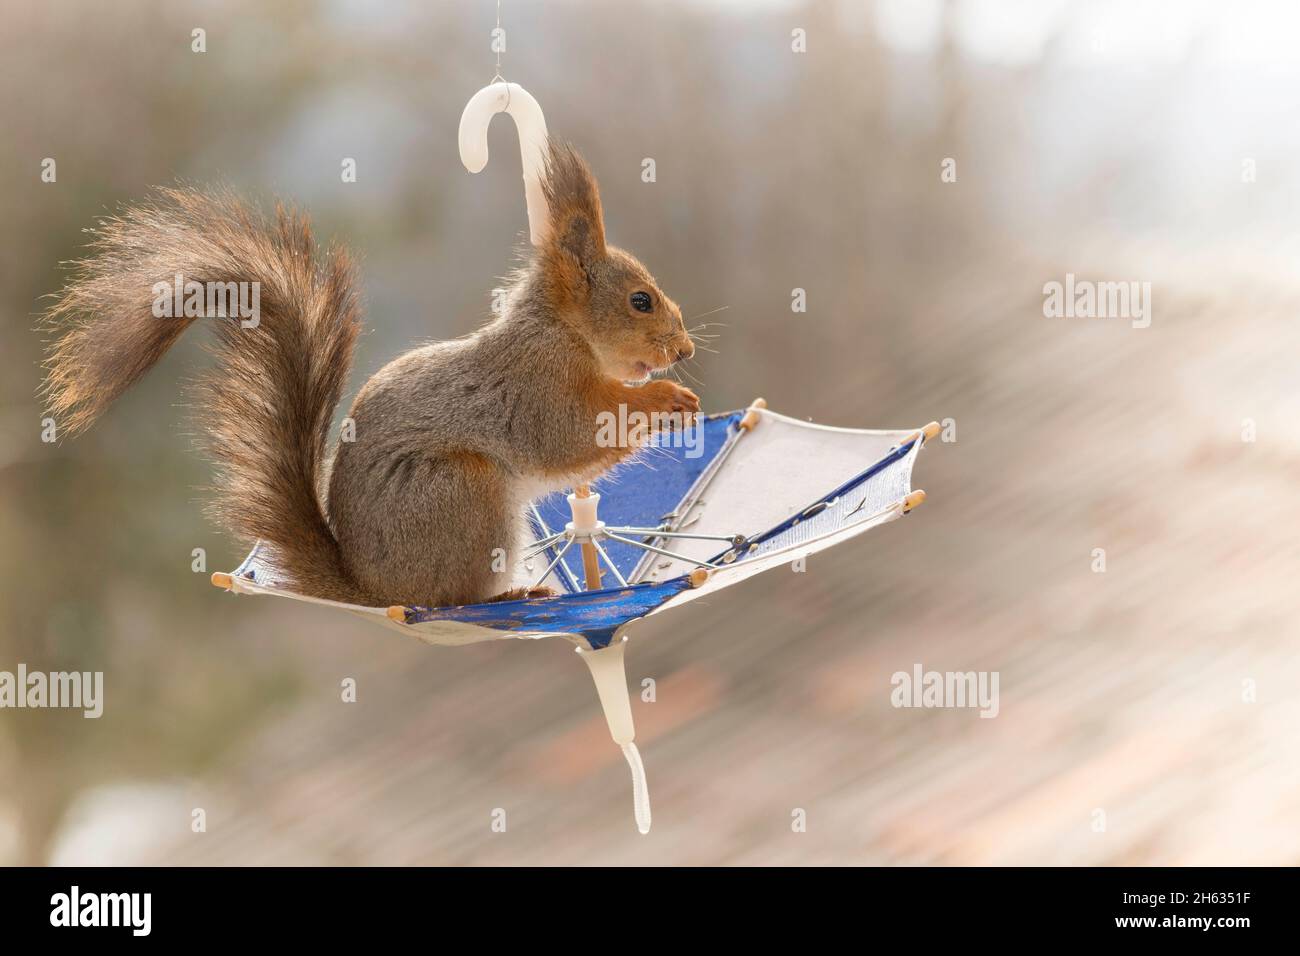 Nahaufnahme eines roten Eichhörnchens, das auf einem Regenschirm steht Stockfoto